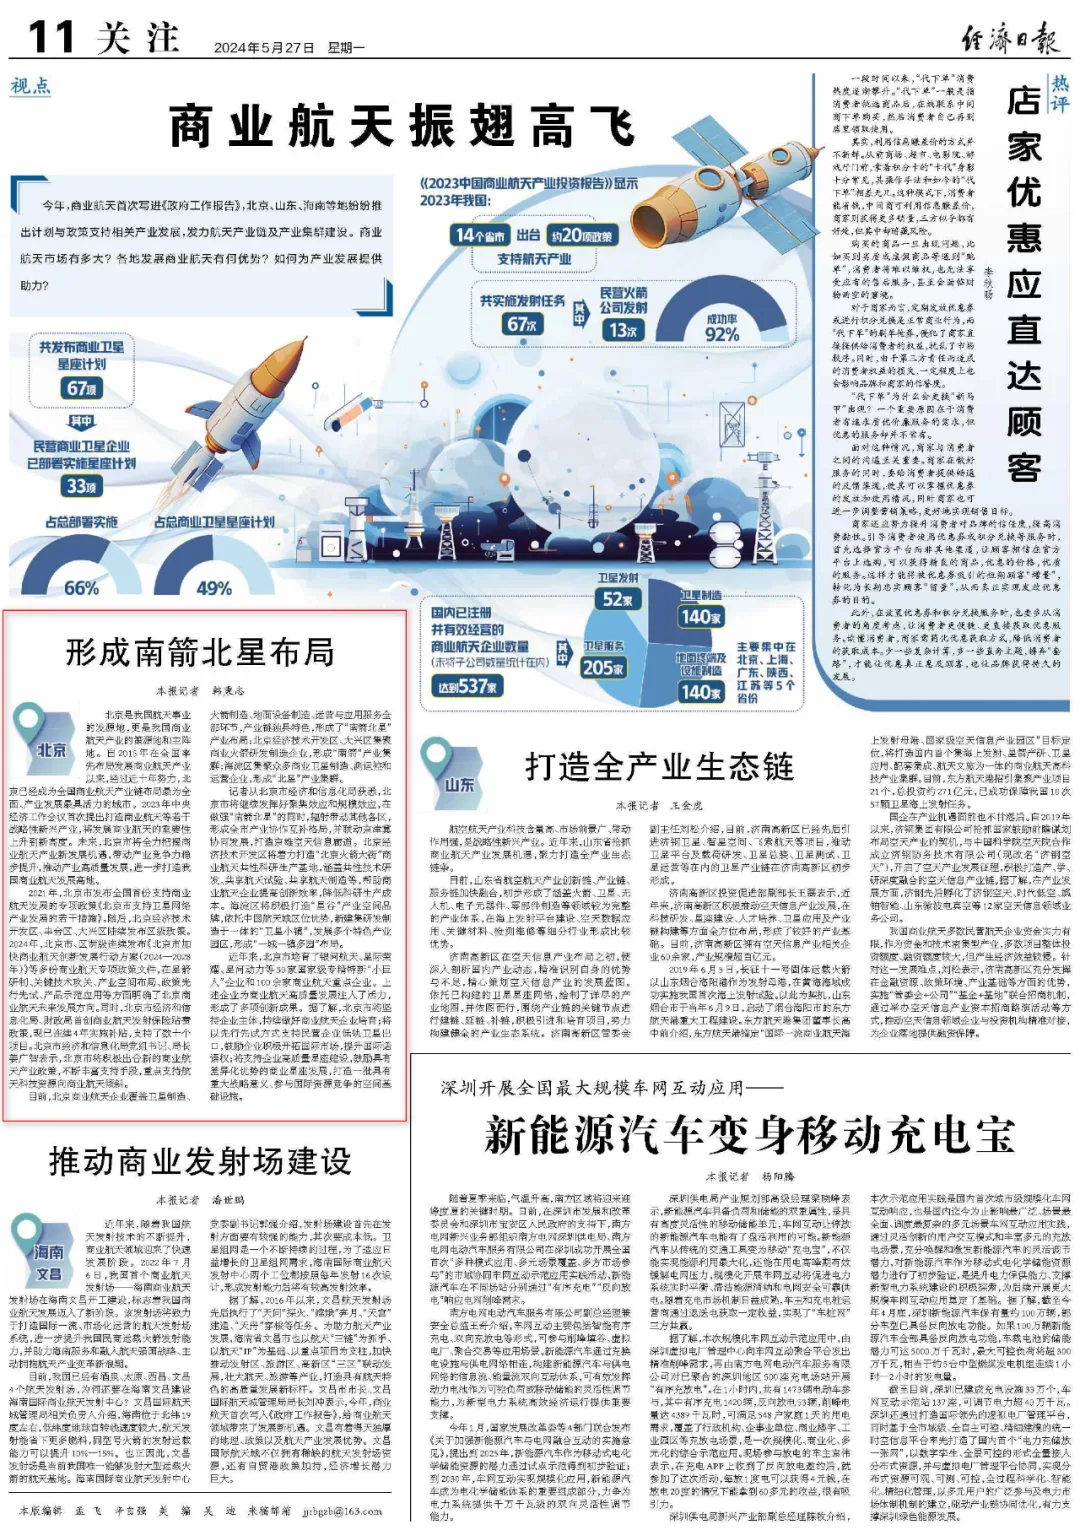 北京形成南箭北星布局 全力把握商业航天产业新发展机遇